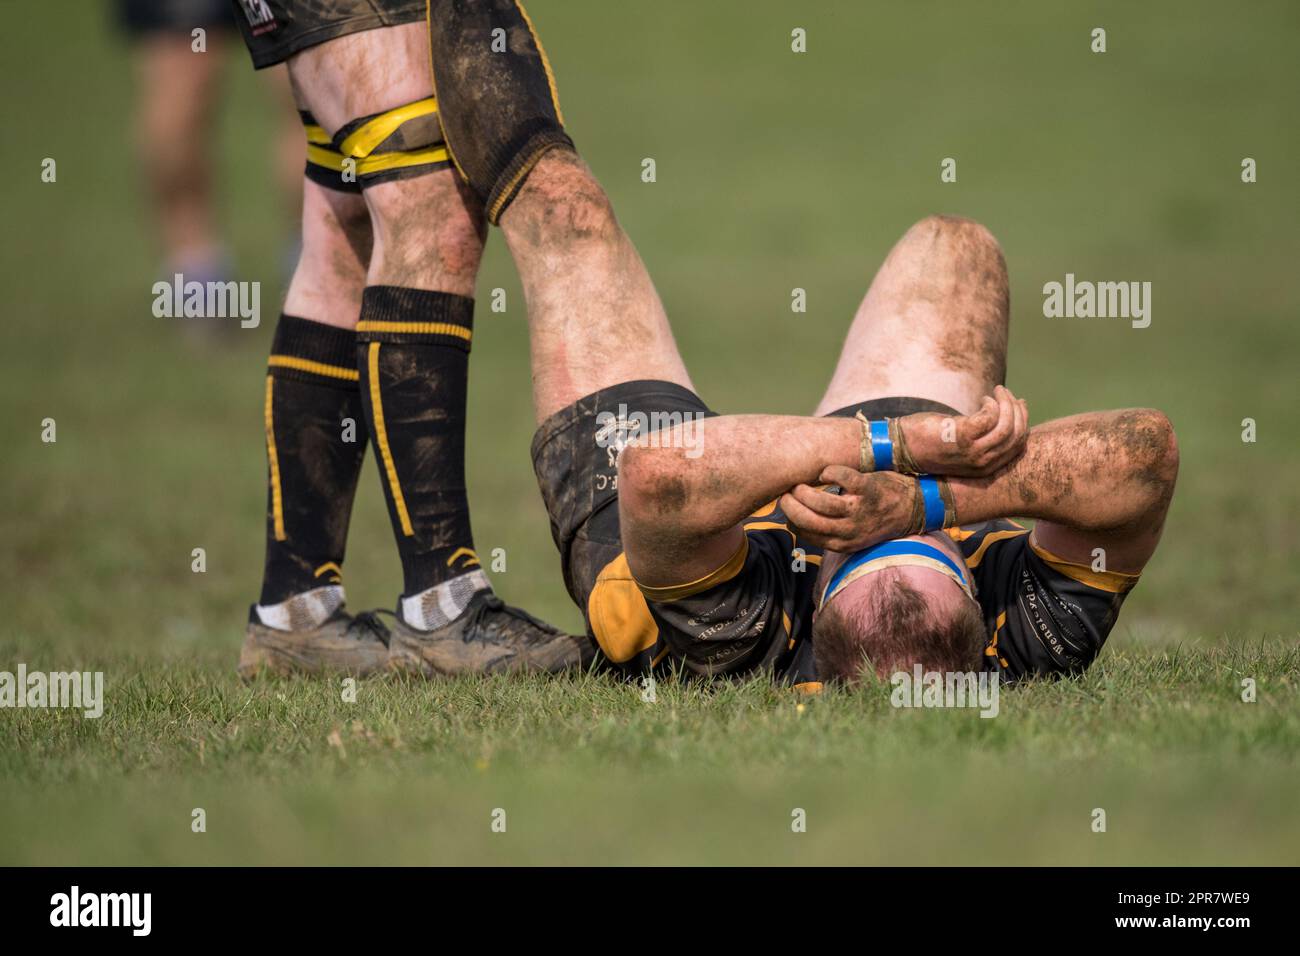 Englische Männer Amateur-Rugby Union-Spieler, die in einem Ligaspiel spielen, erhalten Behandlung wegen Beinkrämpfen. Stockfoto